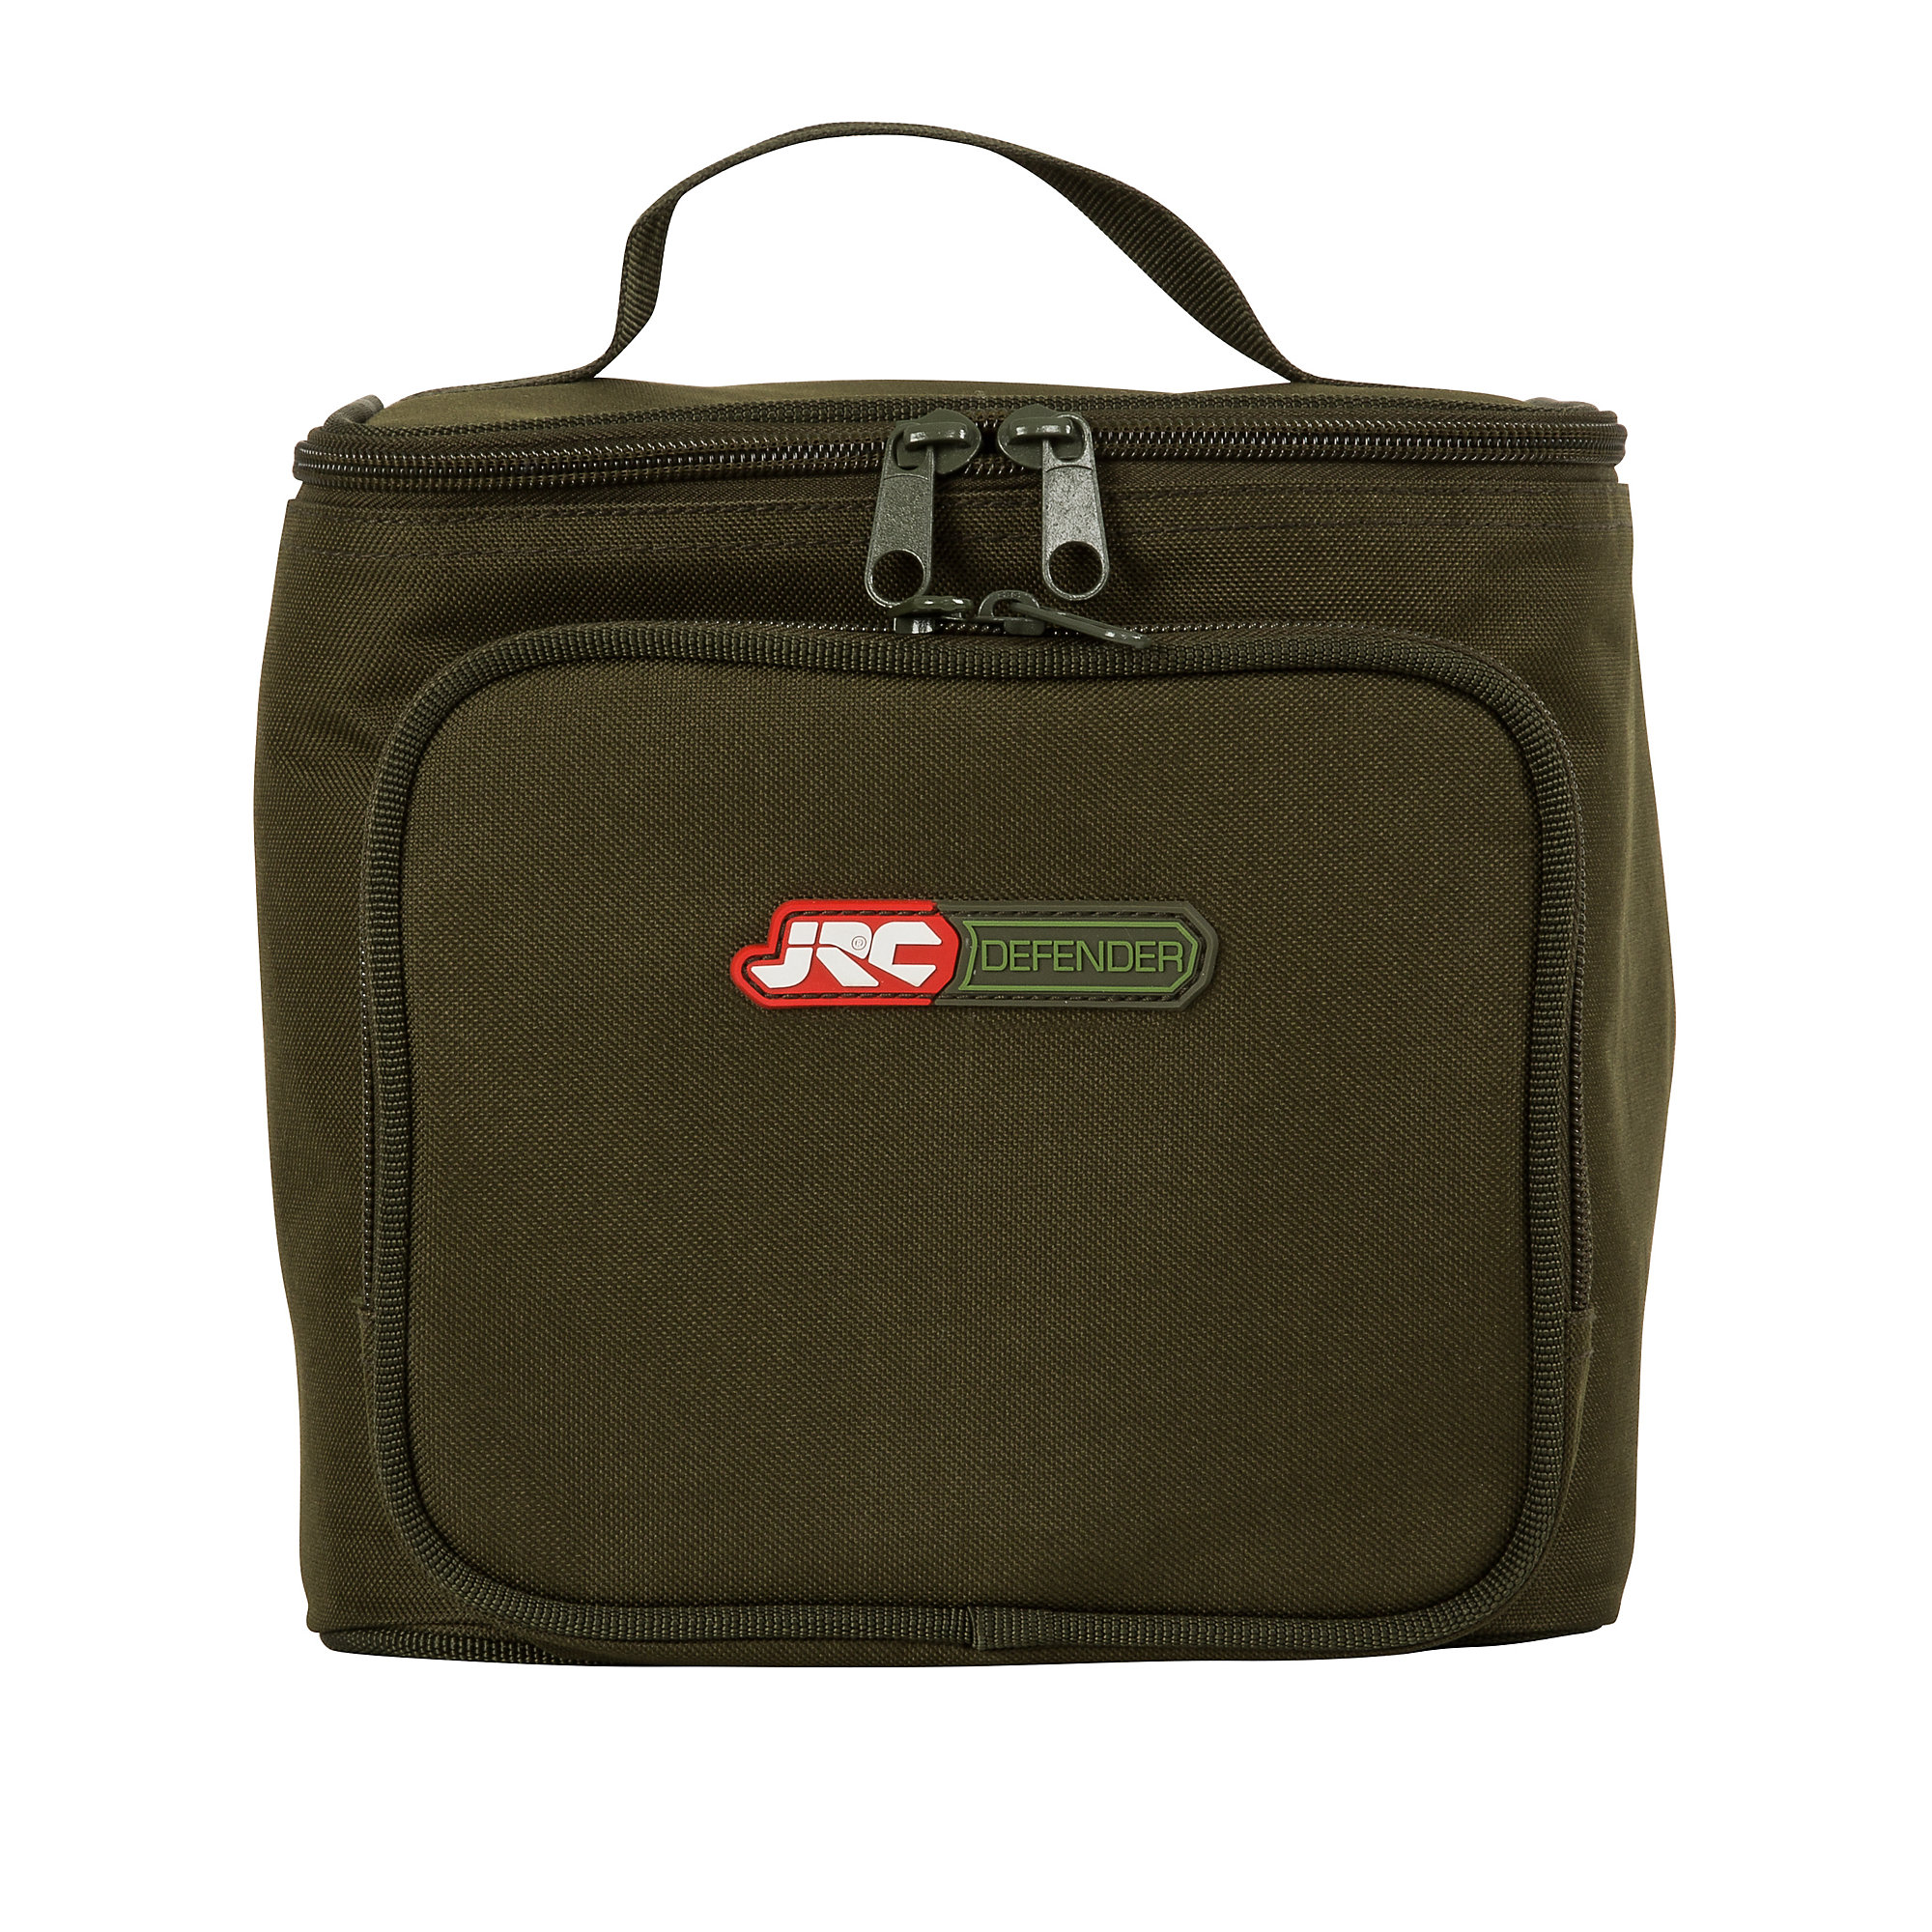 Сумки defender. Сумка JRC. Defender Bag. Сумка JRC Defender Bait Bucket Tackle Bag. Defender Bag used like a Table.